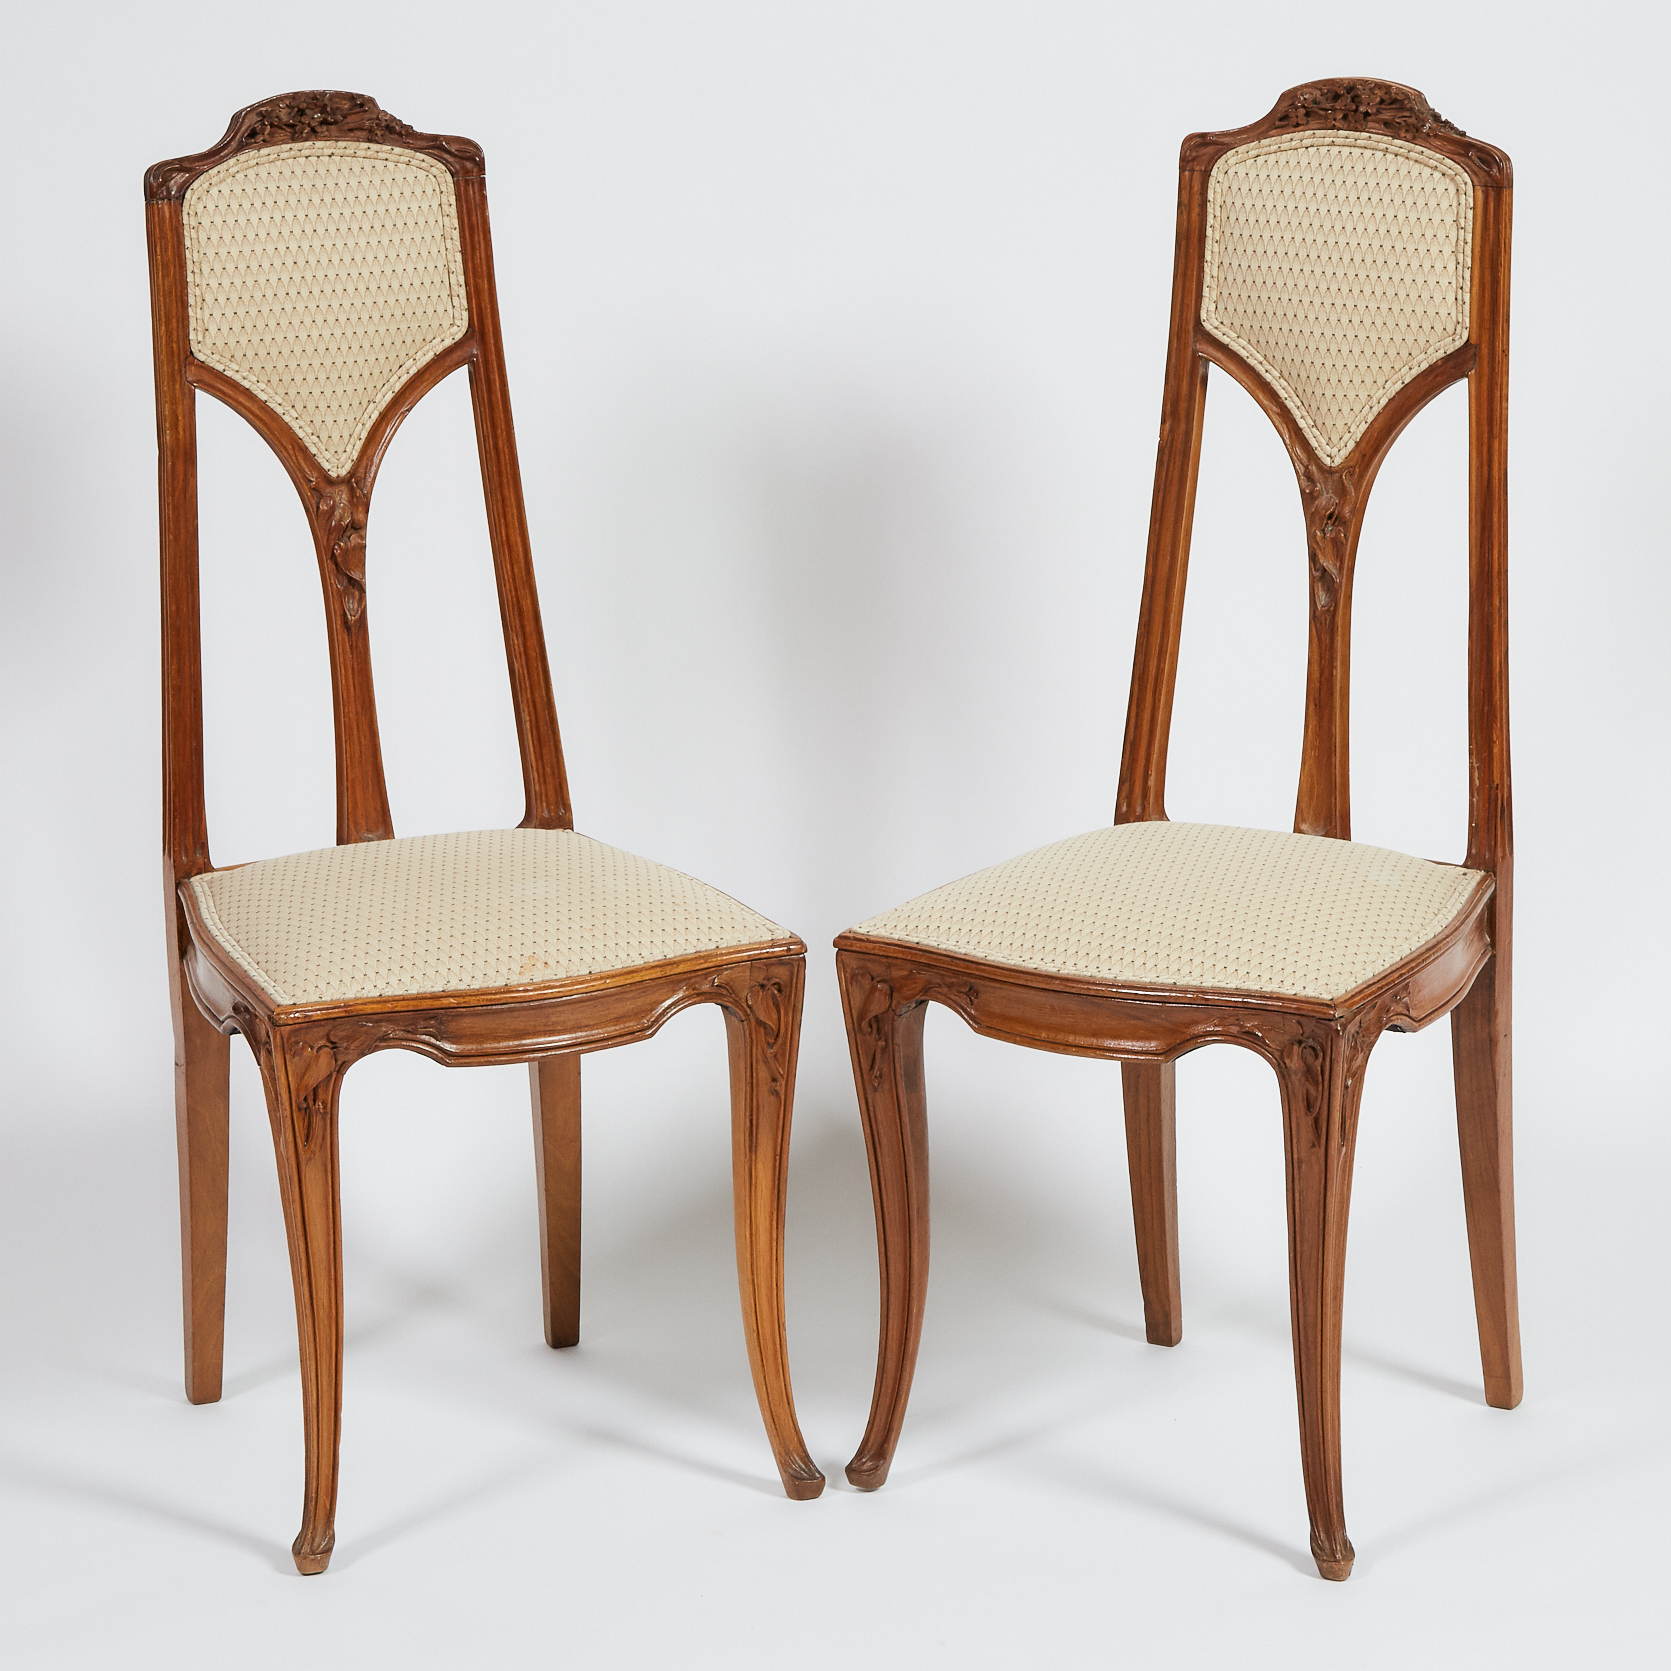 Pair of Louis Majorelle 'Clématites' Side Chairs, c.1900